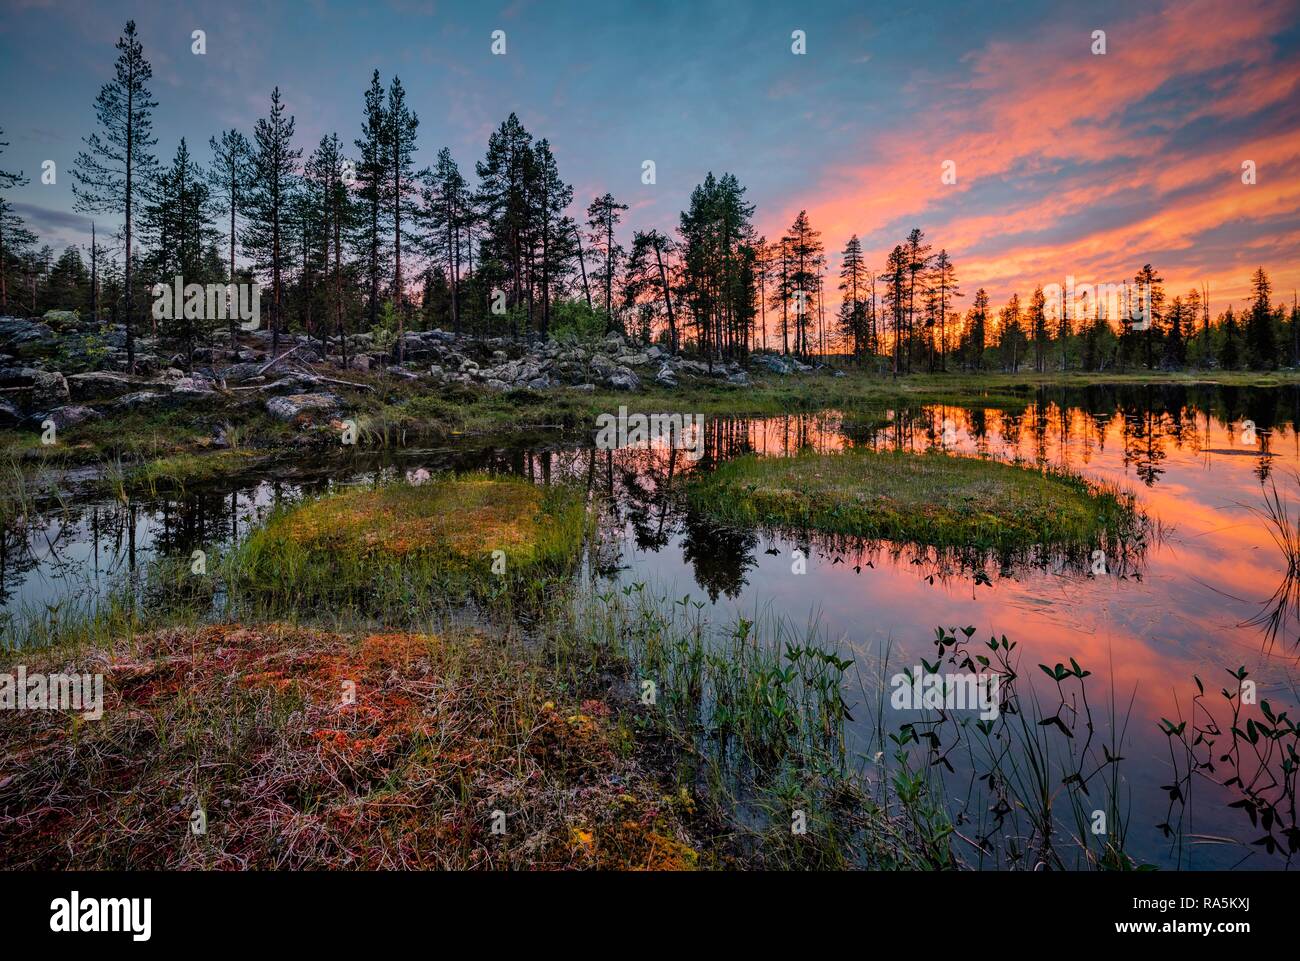 Nuages orange au coucher du soleil, reflétée dans le lac, la forêt, les petites îles avec de l'herbe, Kittilä, Lappi, Finlande Banque D'Images